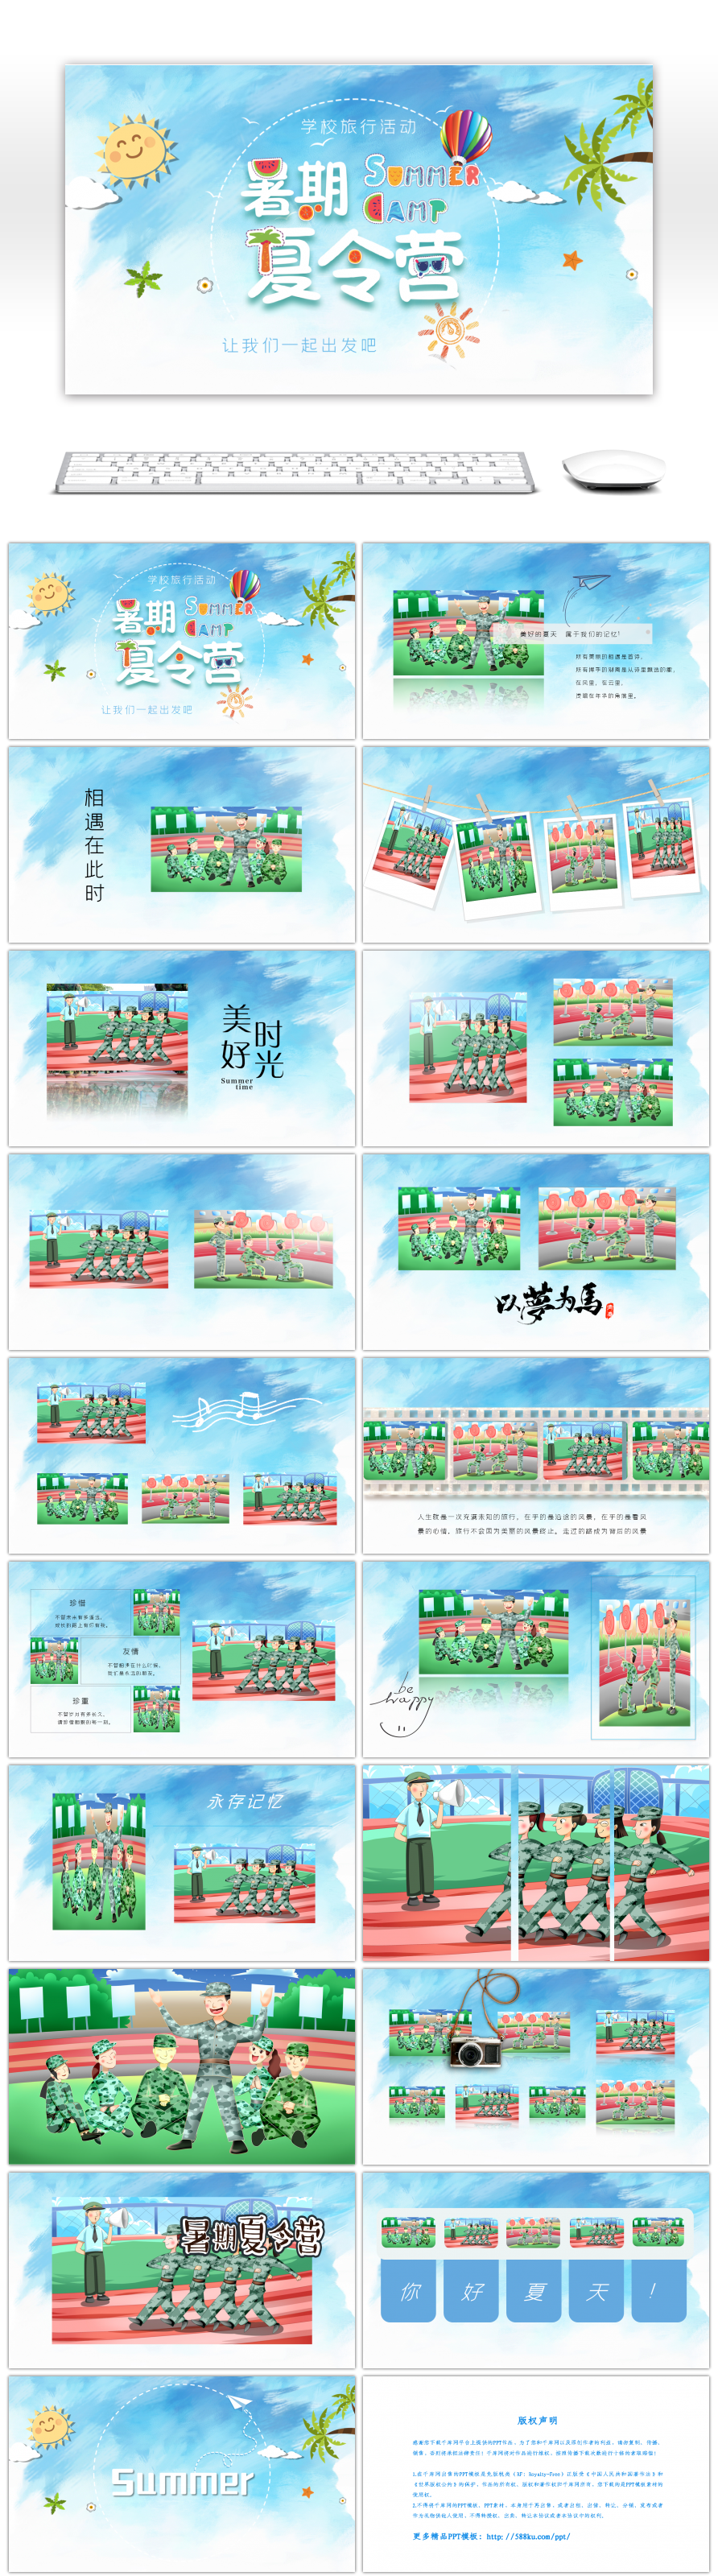 小清新蓝色暑期夏令营宣传画册PPT模板